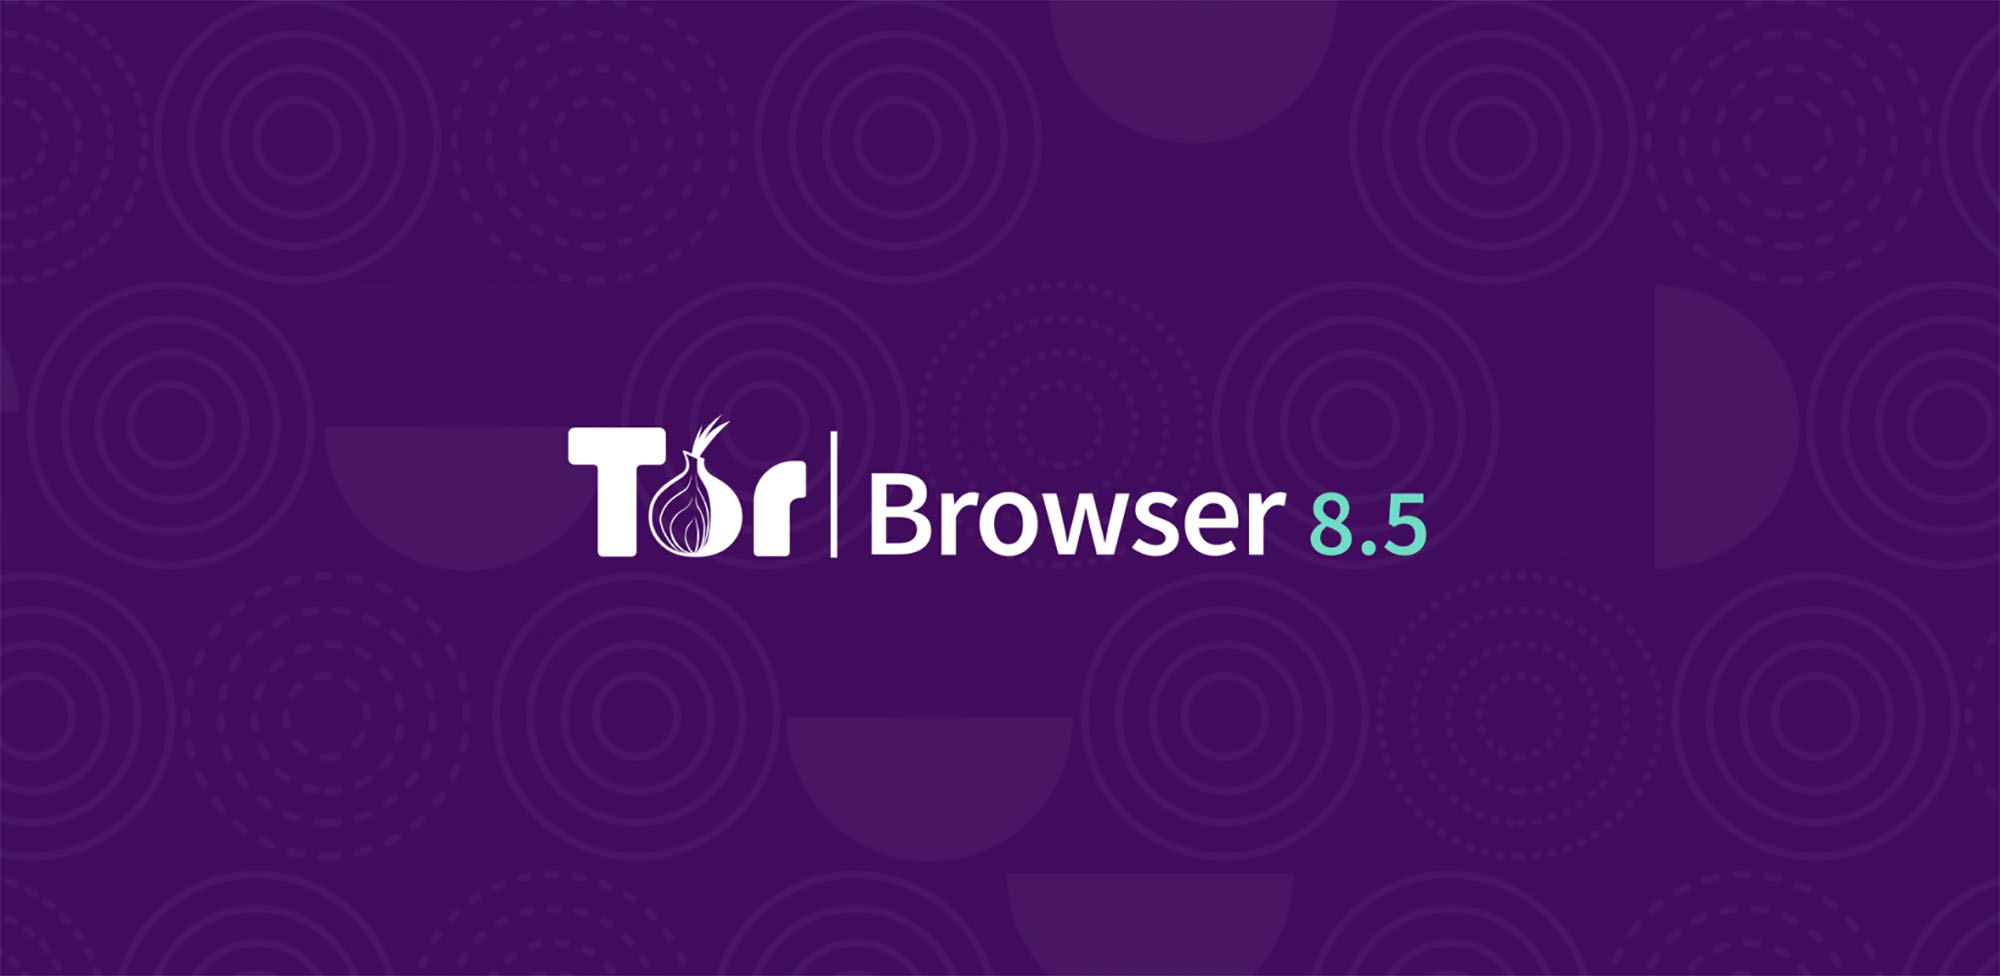 Tor browser portable 1 mega update for tor browser mega вход